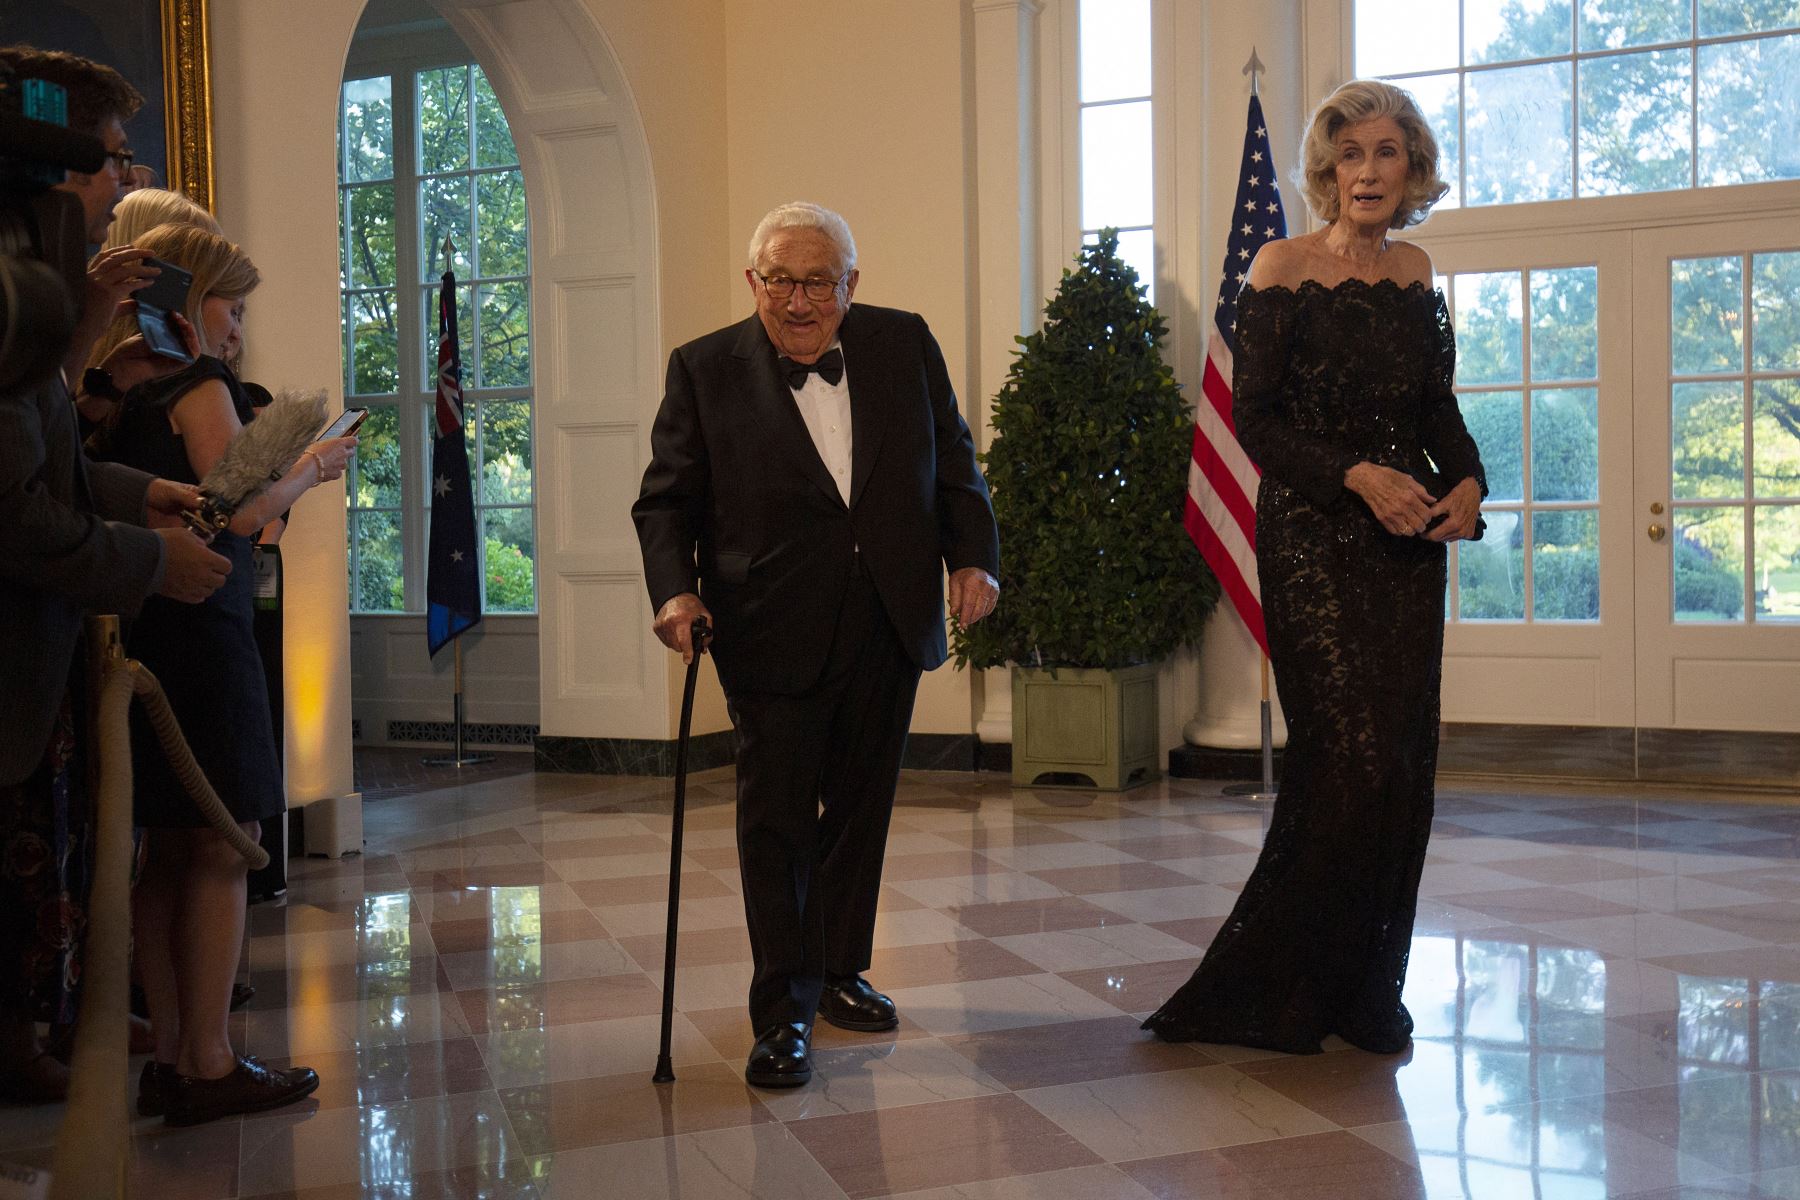 El exsecretario de Estado de Estados Unidos, Henry Kissinger , y su esposa Nancy , llegan al área de librerías de la Casa Blanca para asistir a una cena de estado en honor del primer ministro australiano, Scott Morrison, en Washington, DC, el 20 de septiembre de 2019.
Foto: AFP